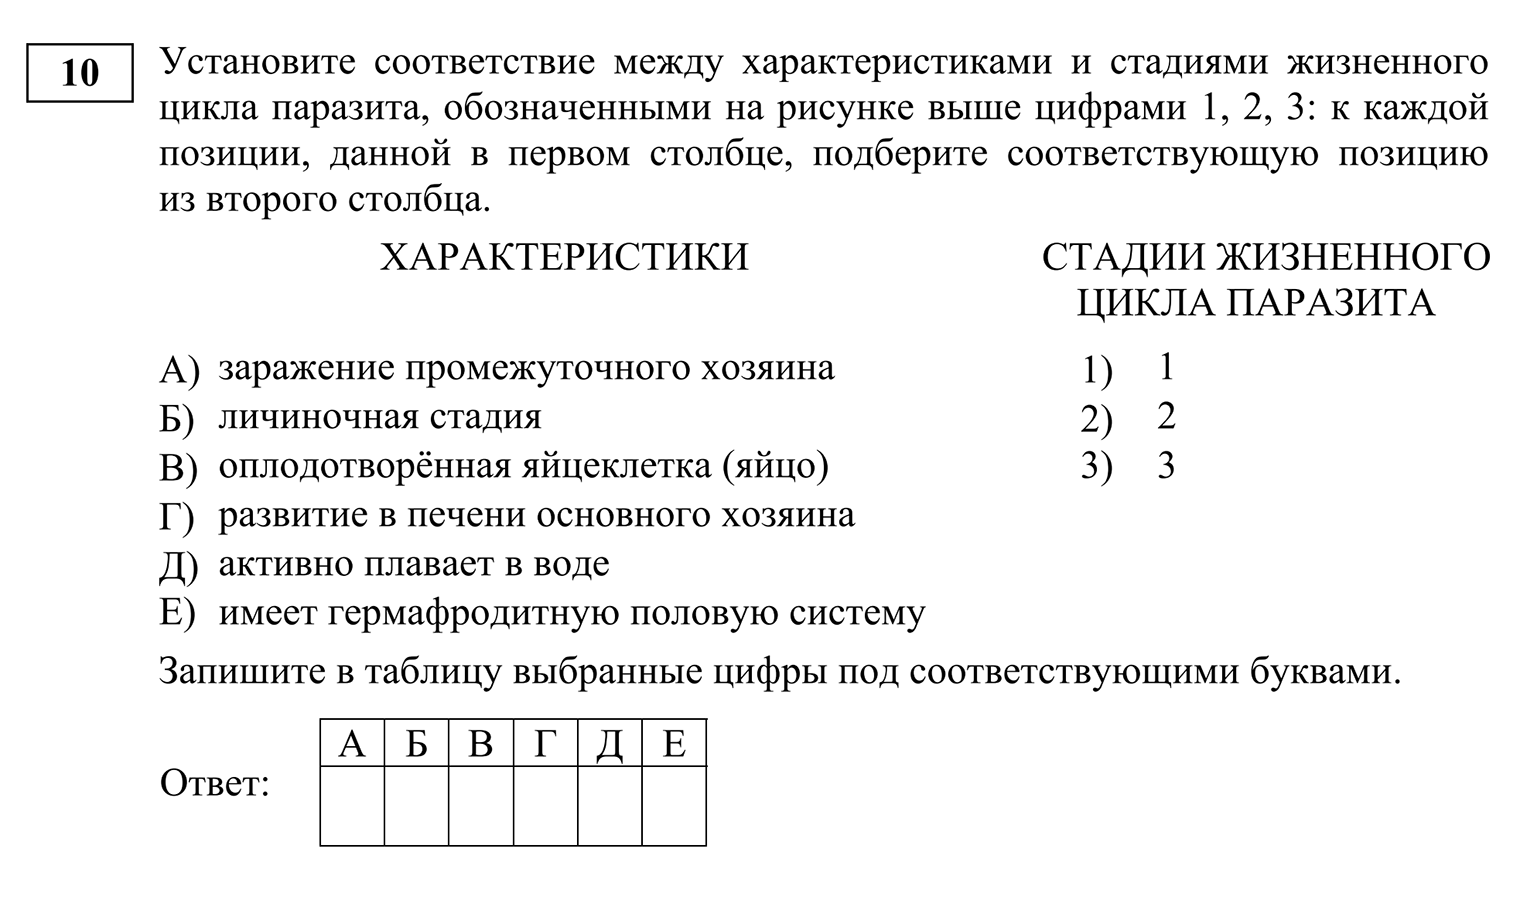 Пример задания повышенной сложности из первой части экзамена, в котором выпускник устанавливает верные соответствия. Источник: fipi.ru